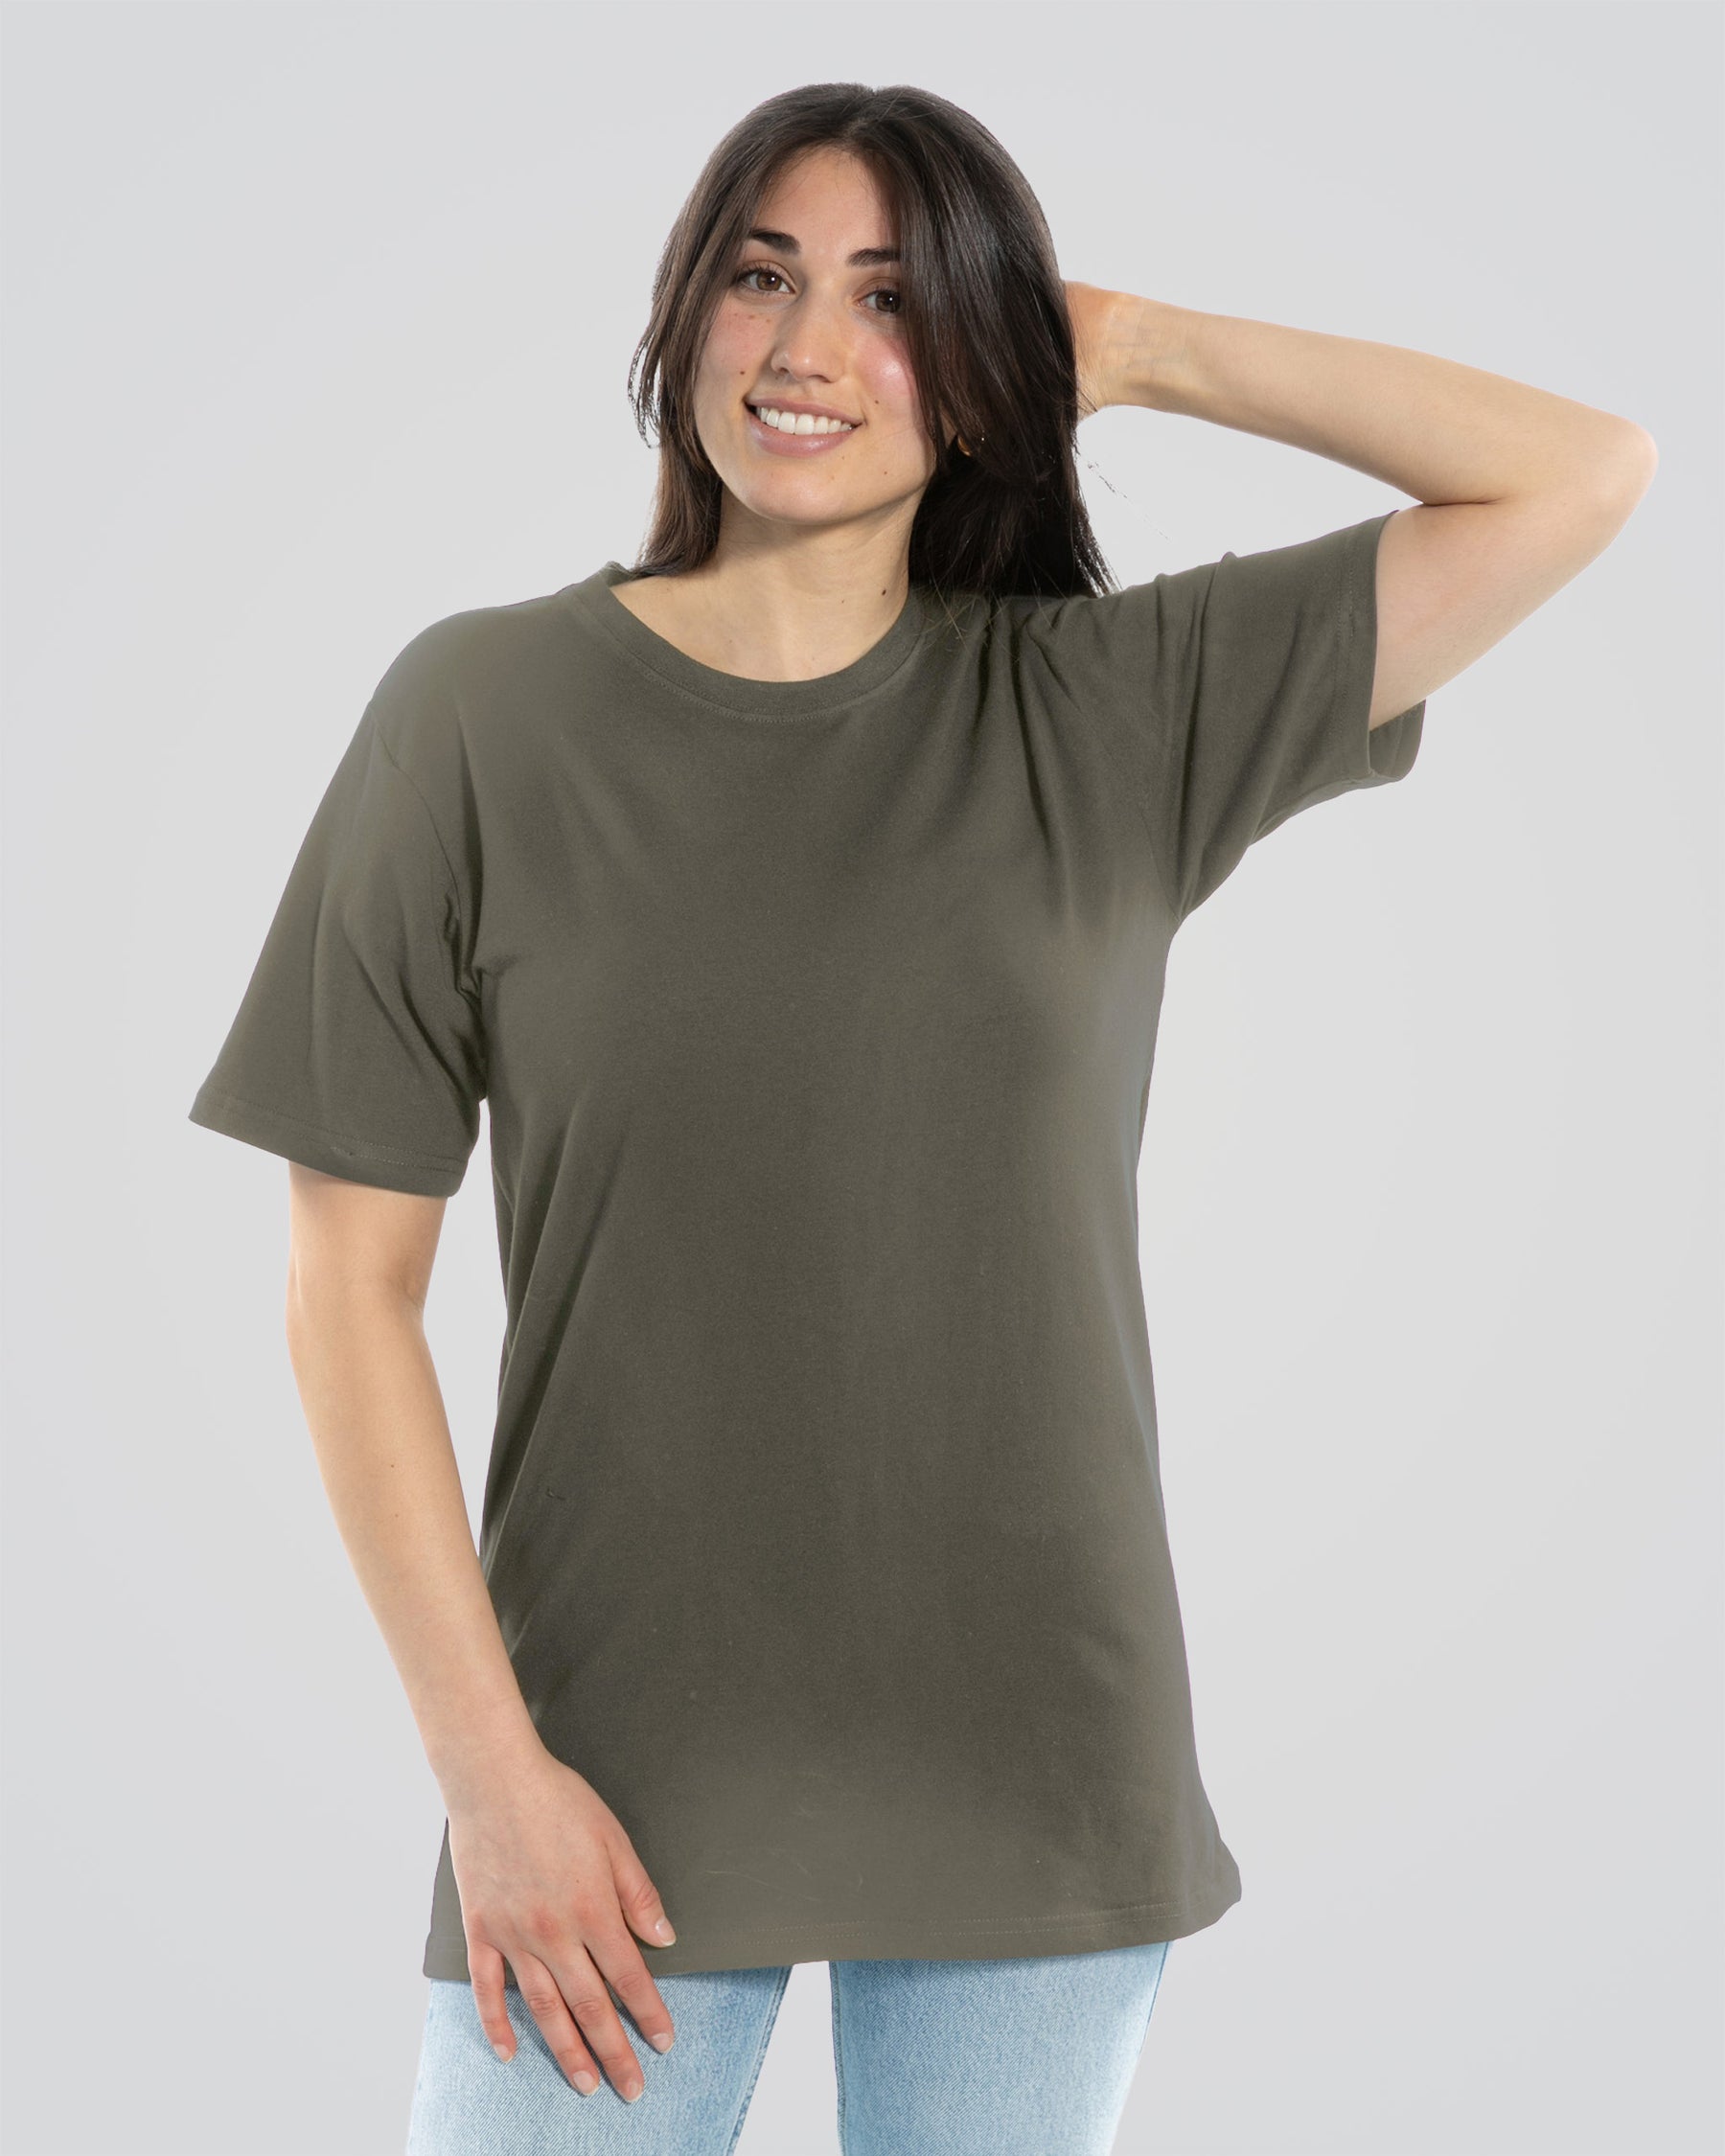 Sweat Proof T-Shirt - Green - Women's Sweat Proof Shirt (Crewneck) | Social Citizen S - Army Green